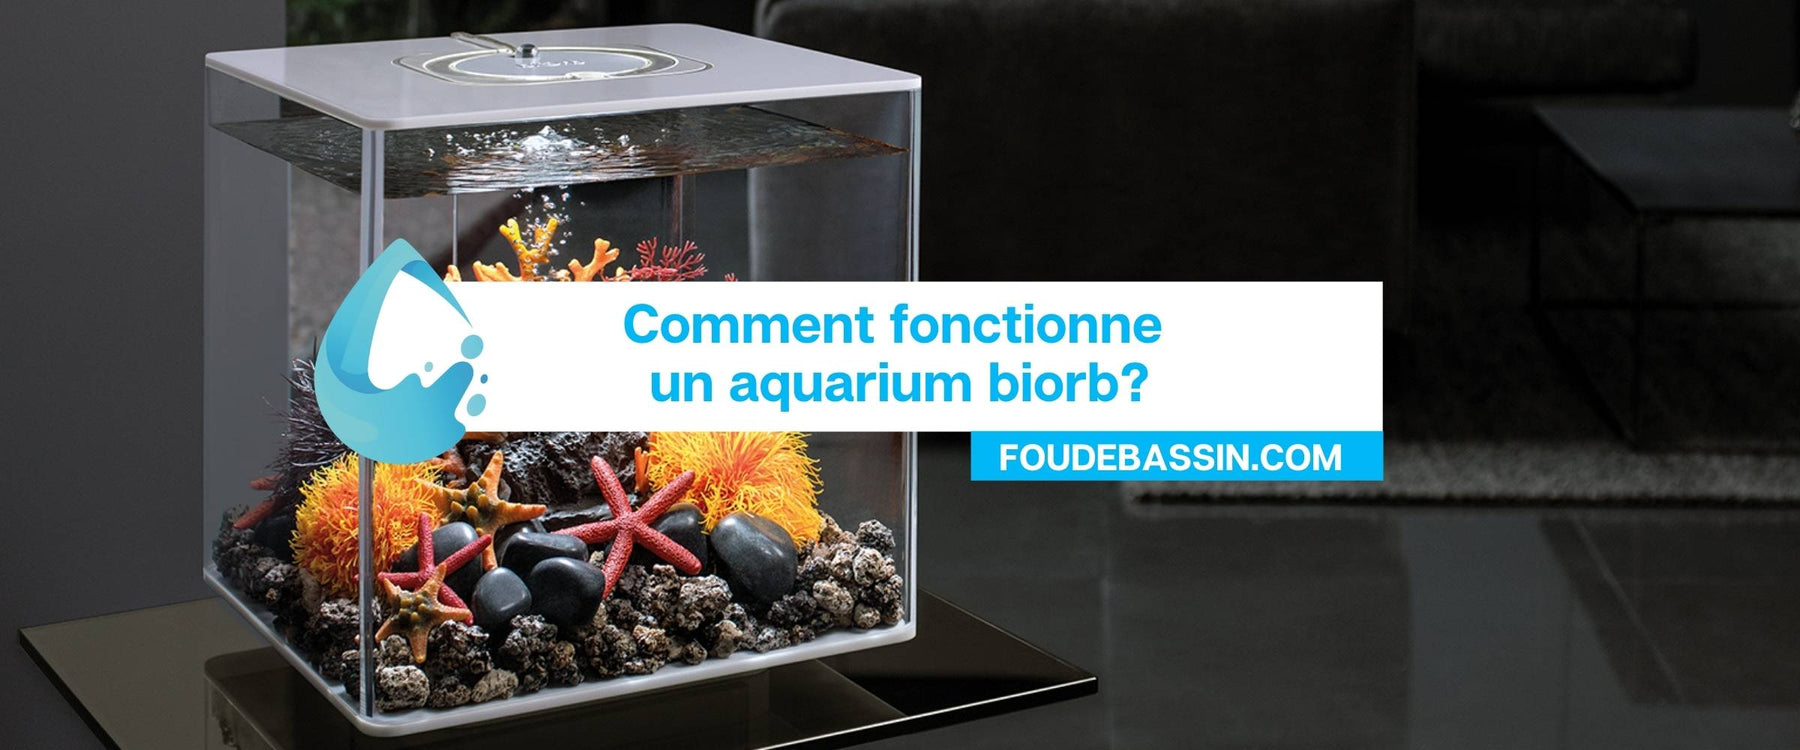 Comment fonctionne un aquarium biorb?